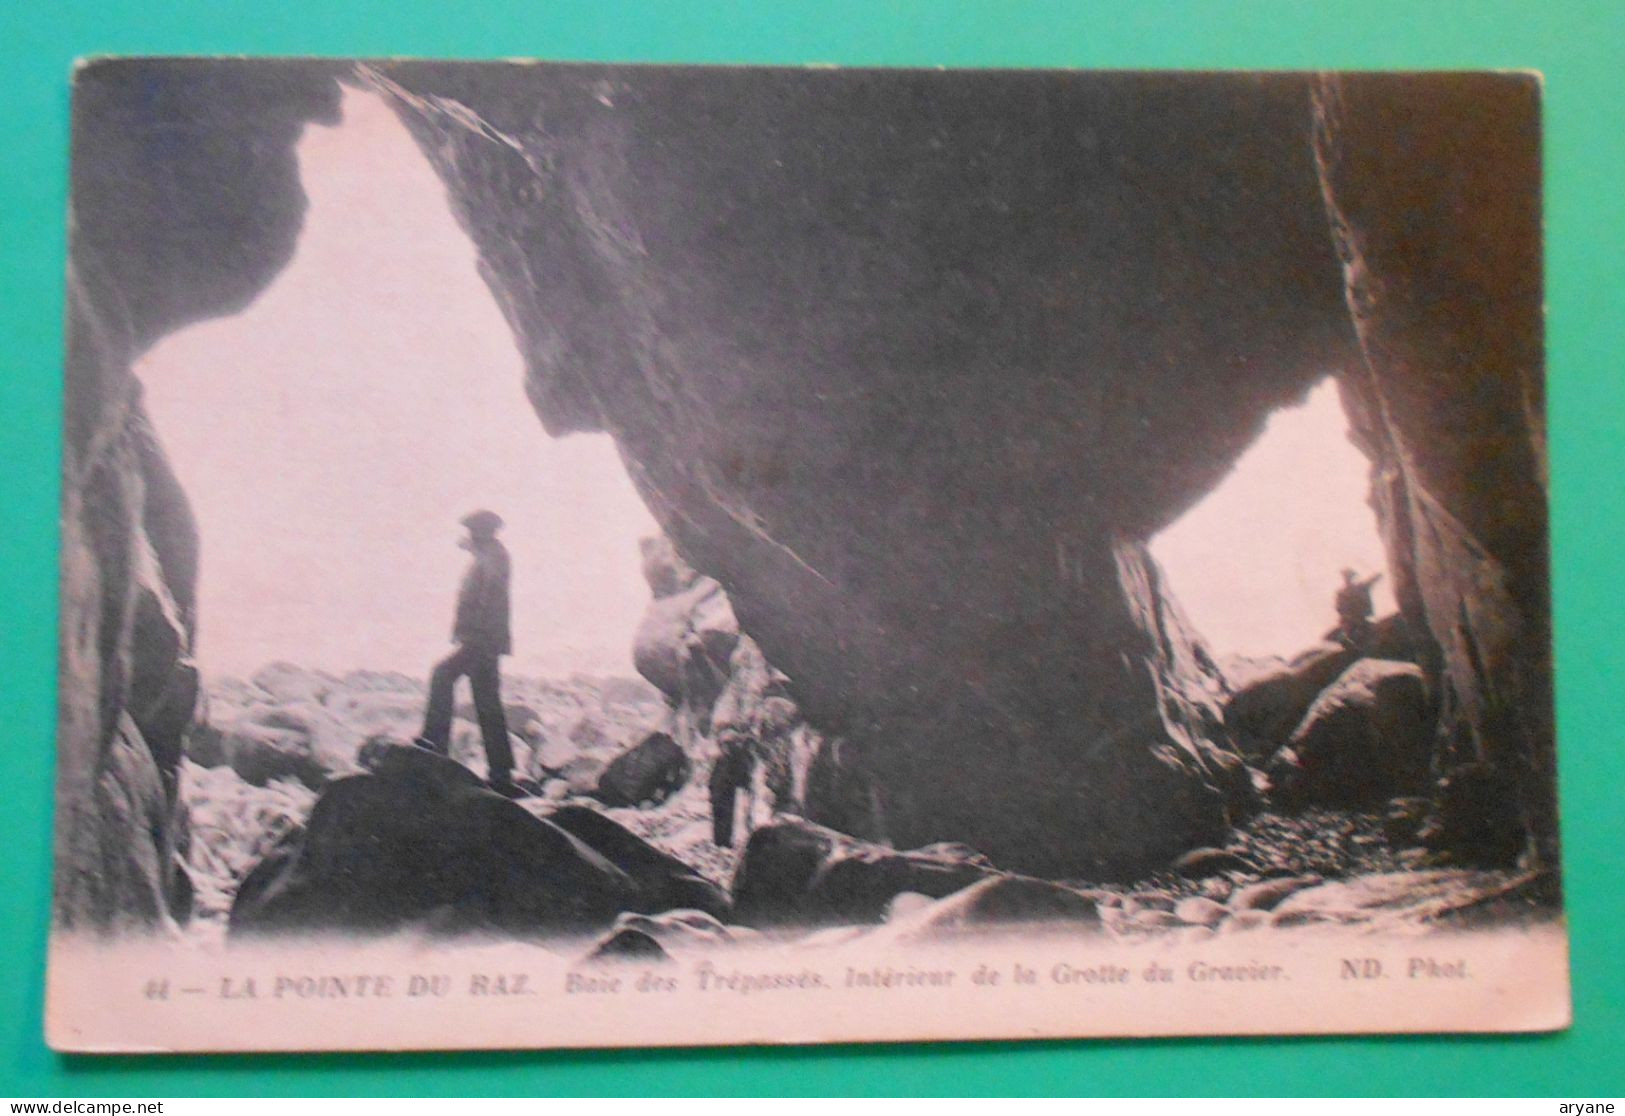 2232- CPA - PLOGOFF (29) - LA POINTE DU RAZ - Baie Des Trépassés. Intérieur De La Grotte Du Gravier - ND Phot. N° 44 -2 - Plogoff